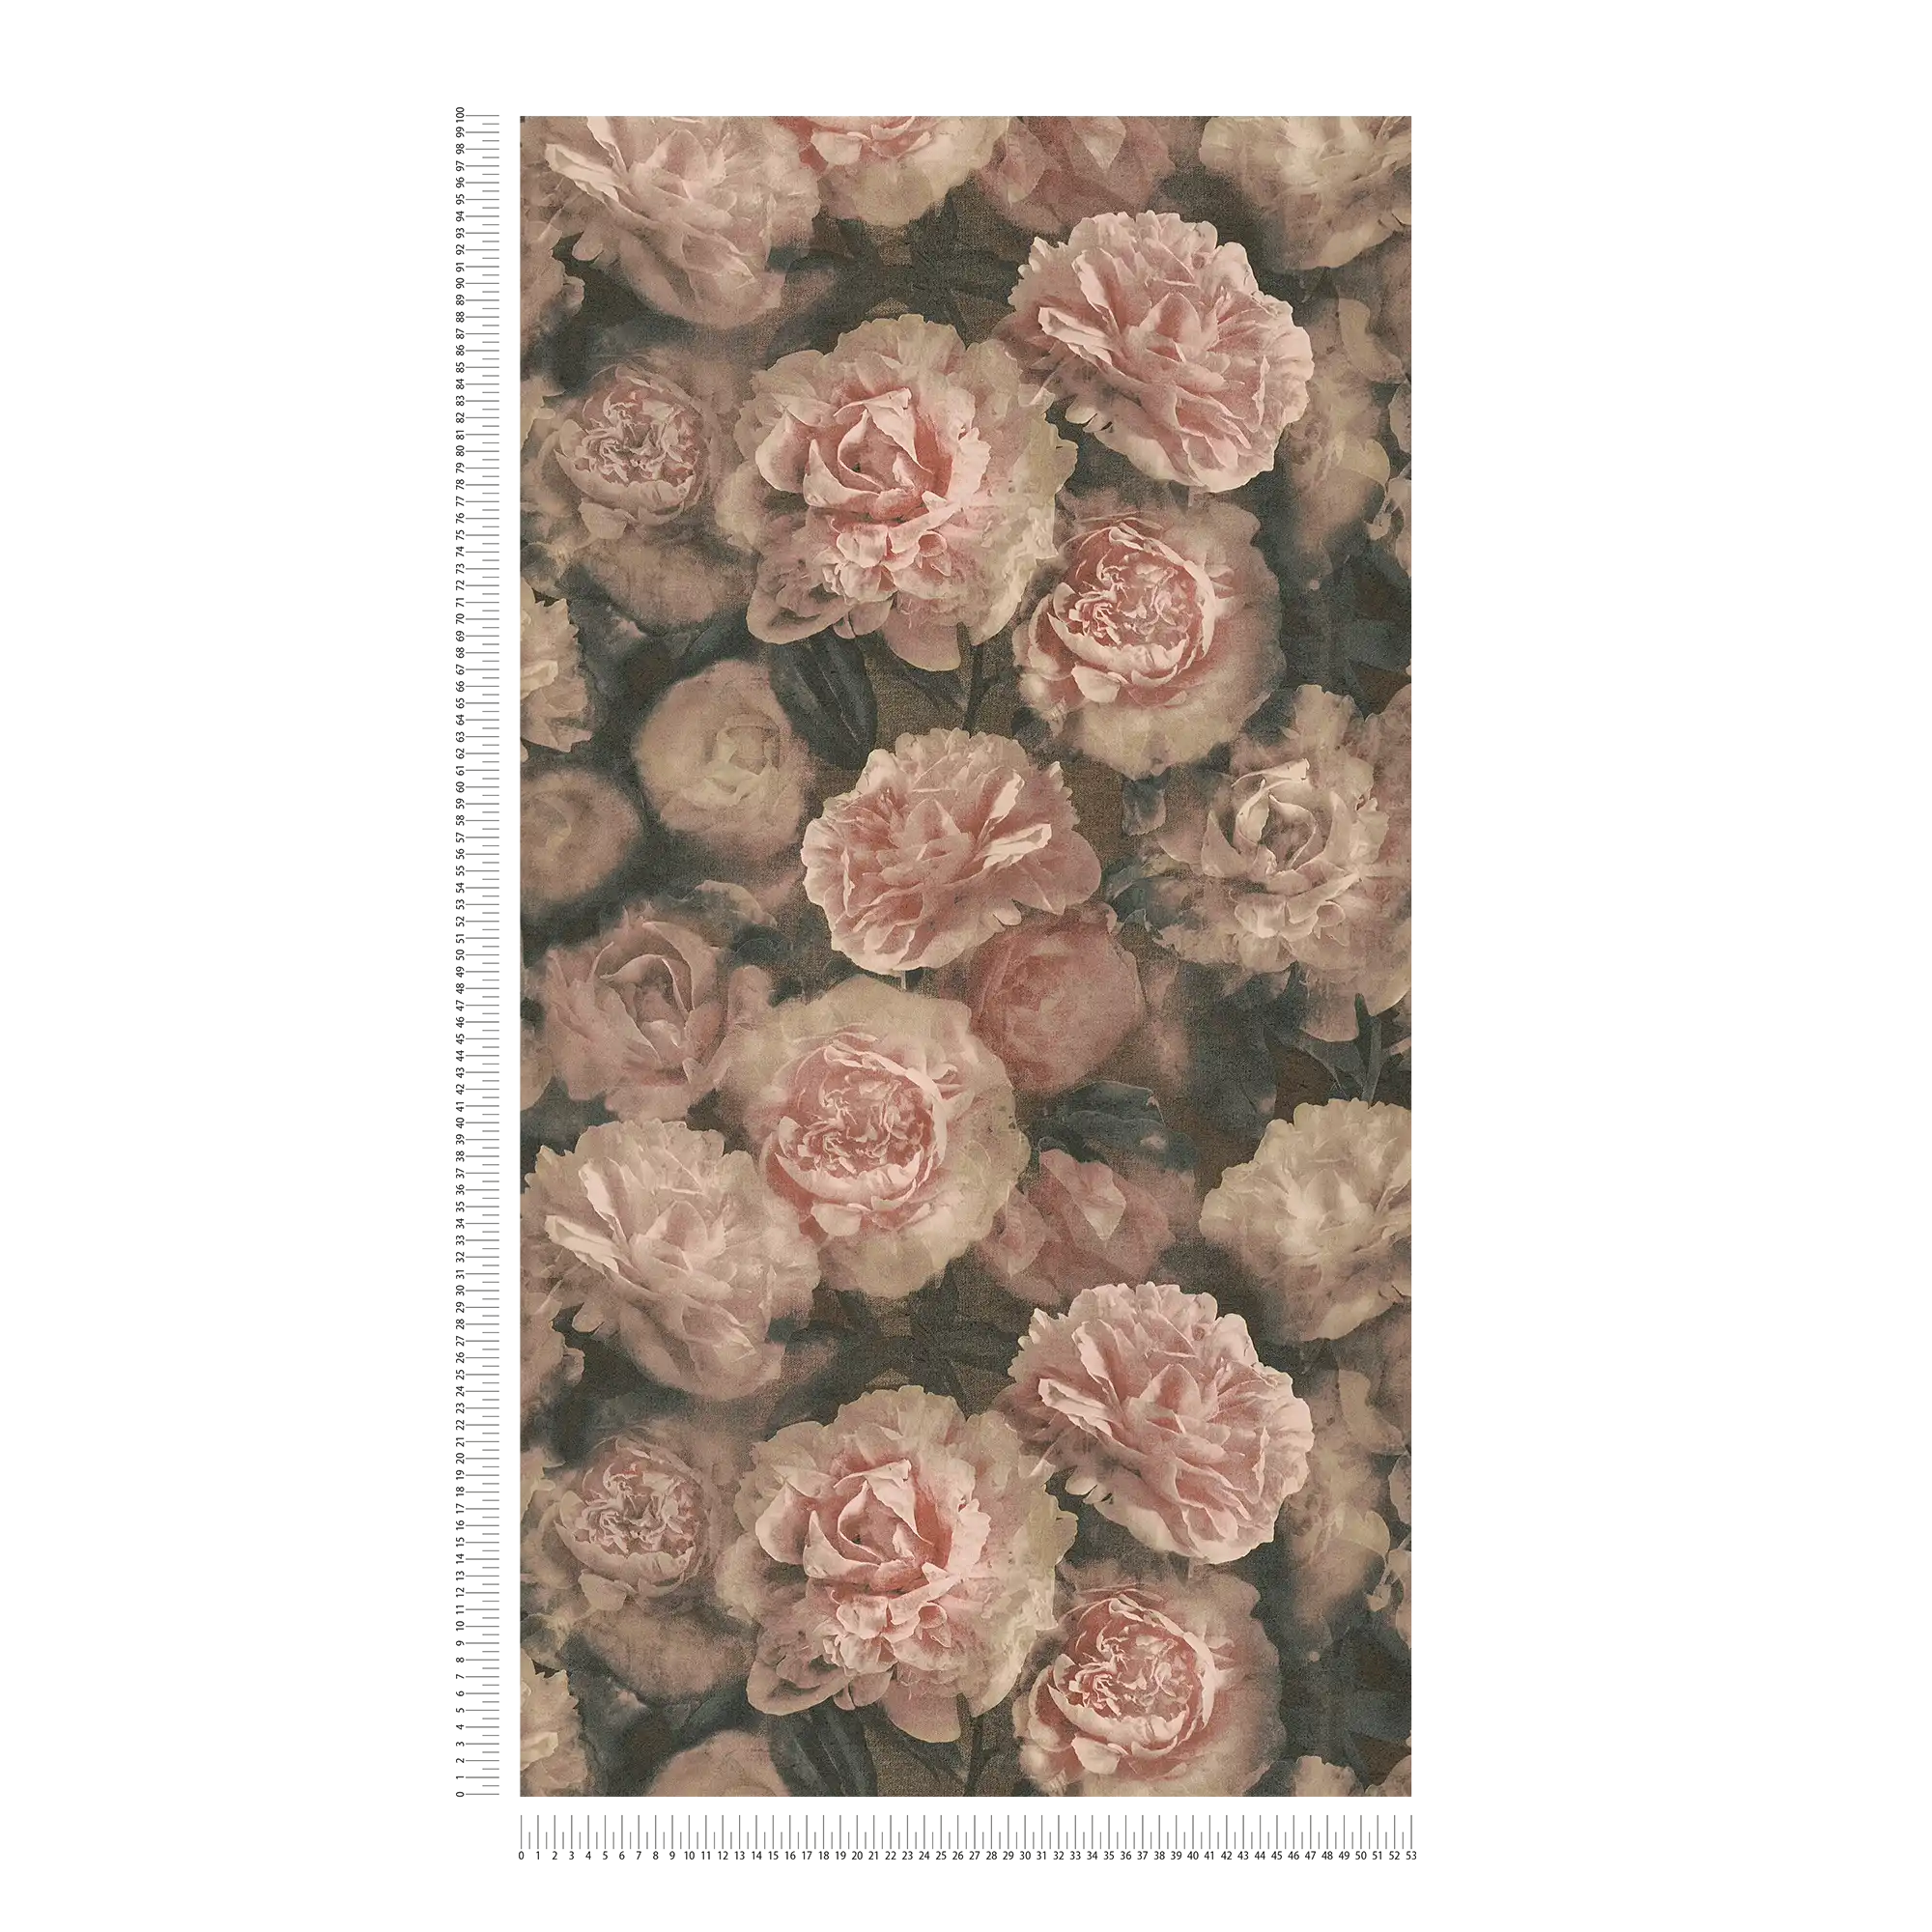             Vintage look bloemenbehang rozen - roze, rood, zwart
        